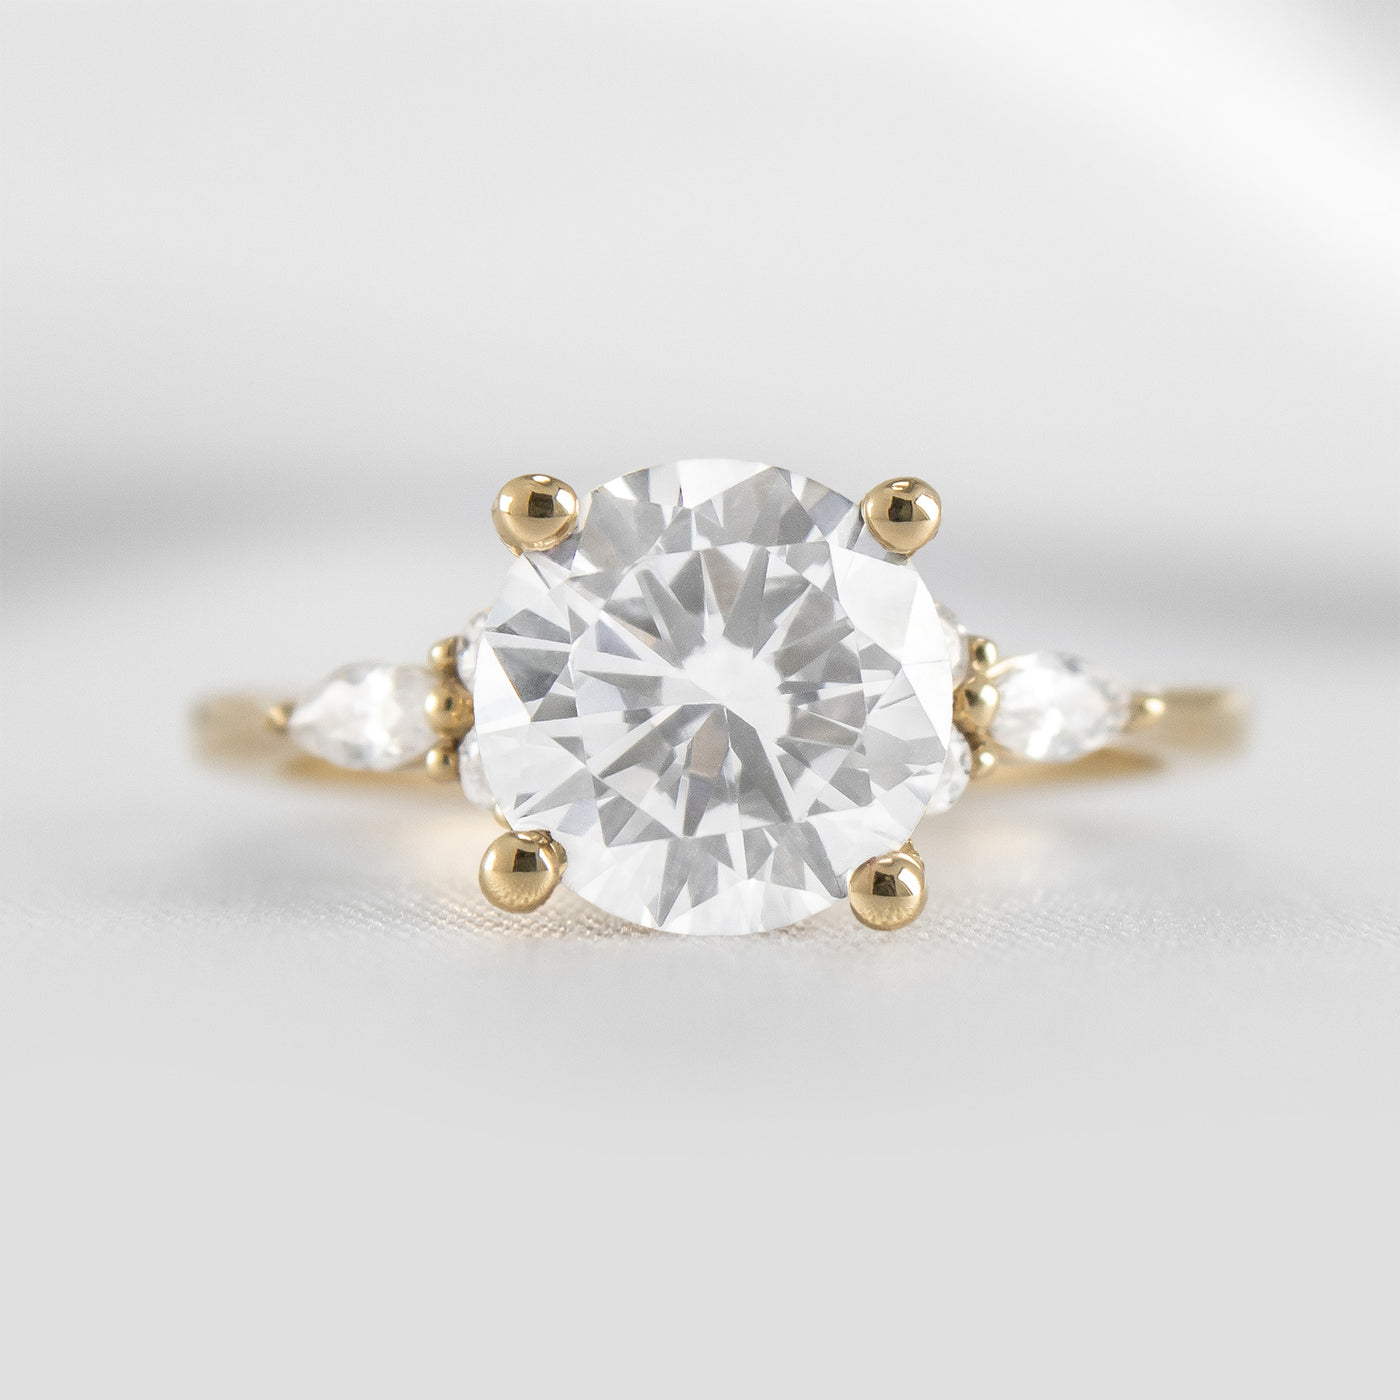 The Sophia Moissanite Diamond Side Stone Engagement Ring